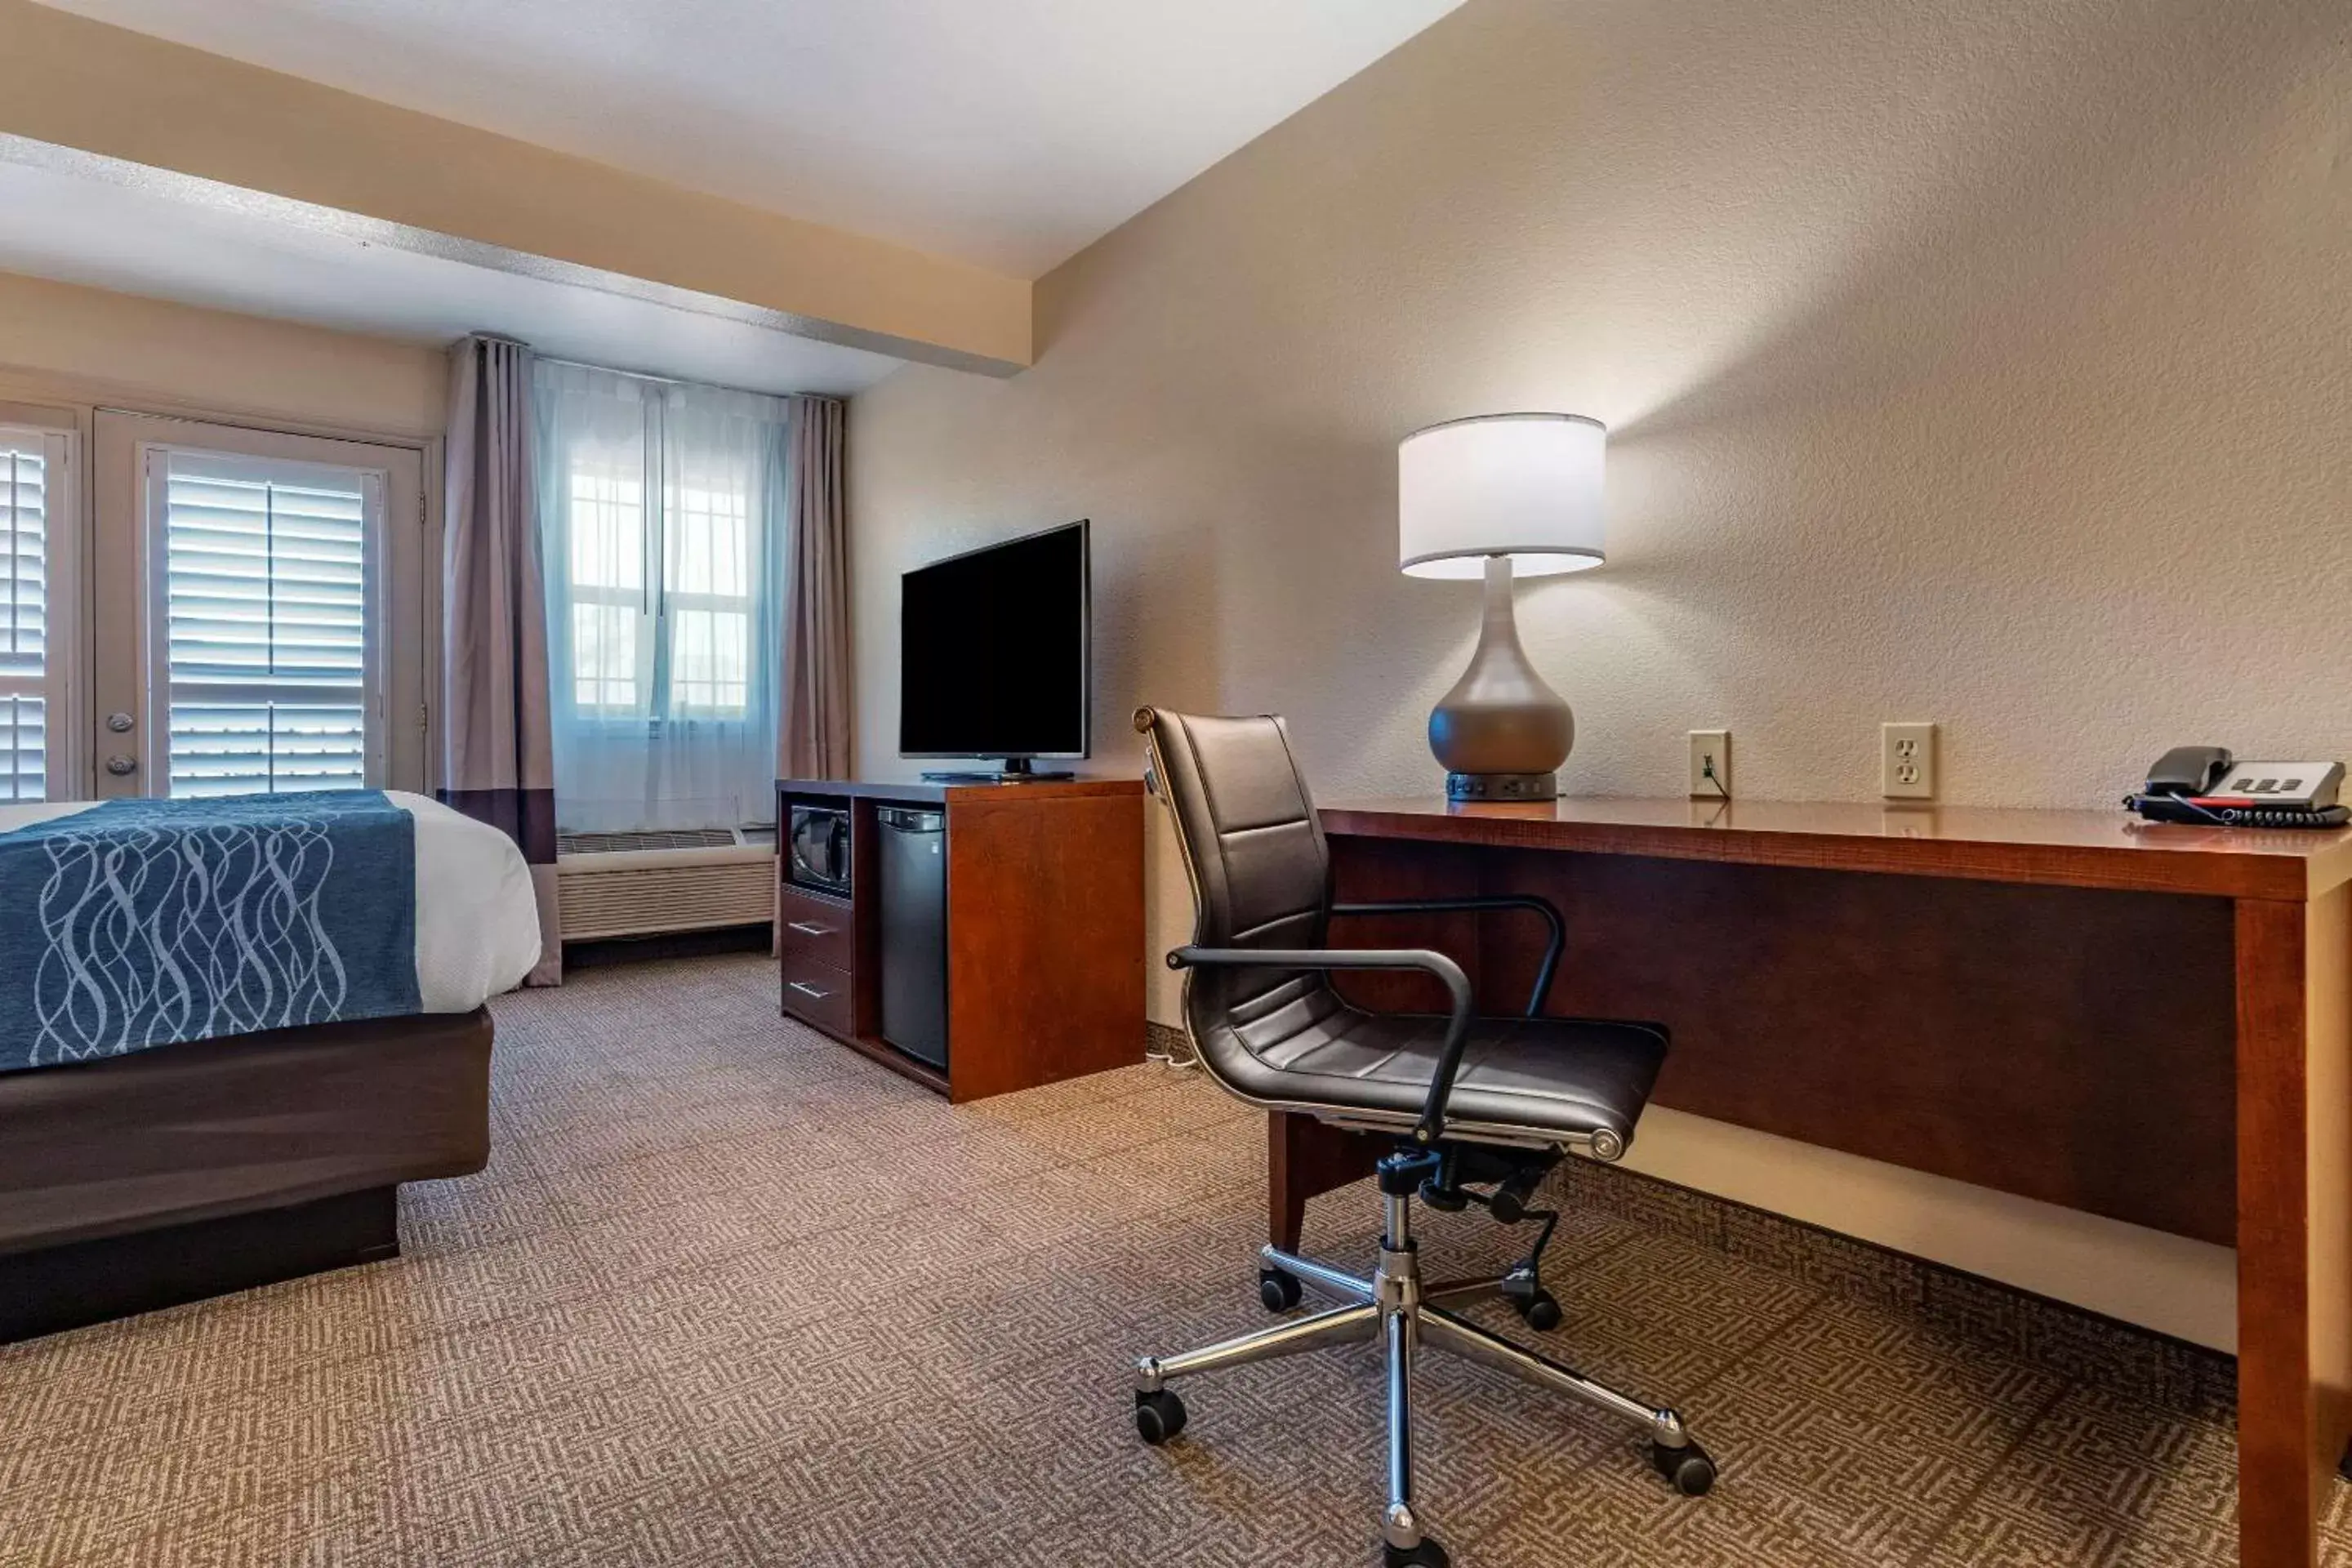 Bedroom, TV/Entertainment Center in Comfort Inn & Suites Ukiah Mendocino County